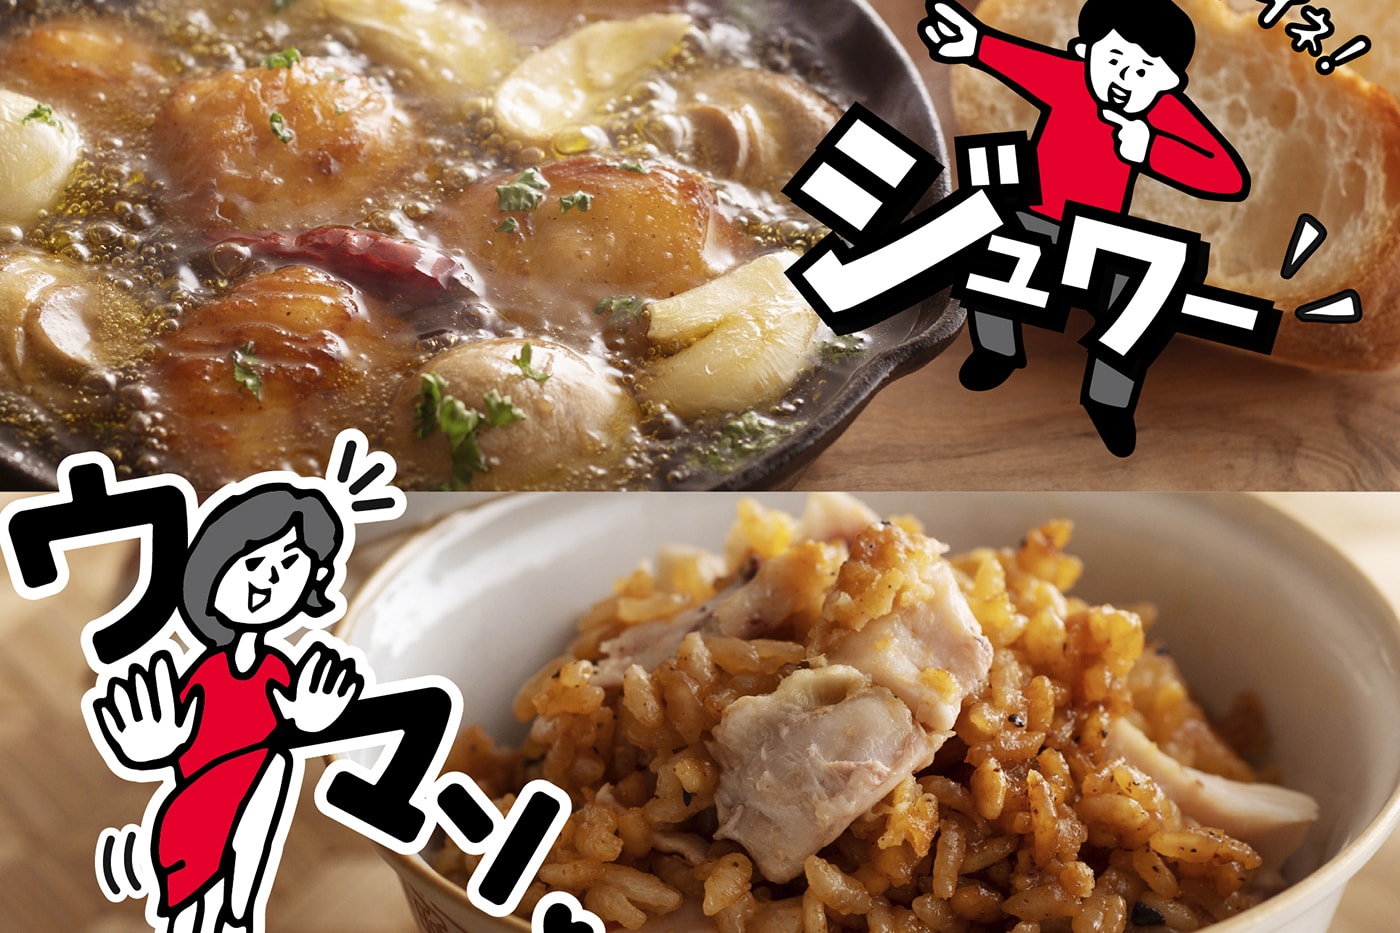 https://image-cdn.hypb.st/https%3A%2F%2Fhypebeast.com%2Fimage%2F2021%2F08%2Fkfc-japan-kentucky-fried-ramen-japanese-cooking-recipe-001.jpg?cbr=1&q=90